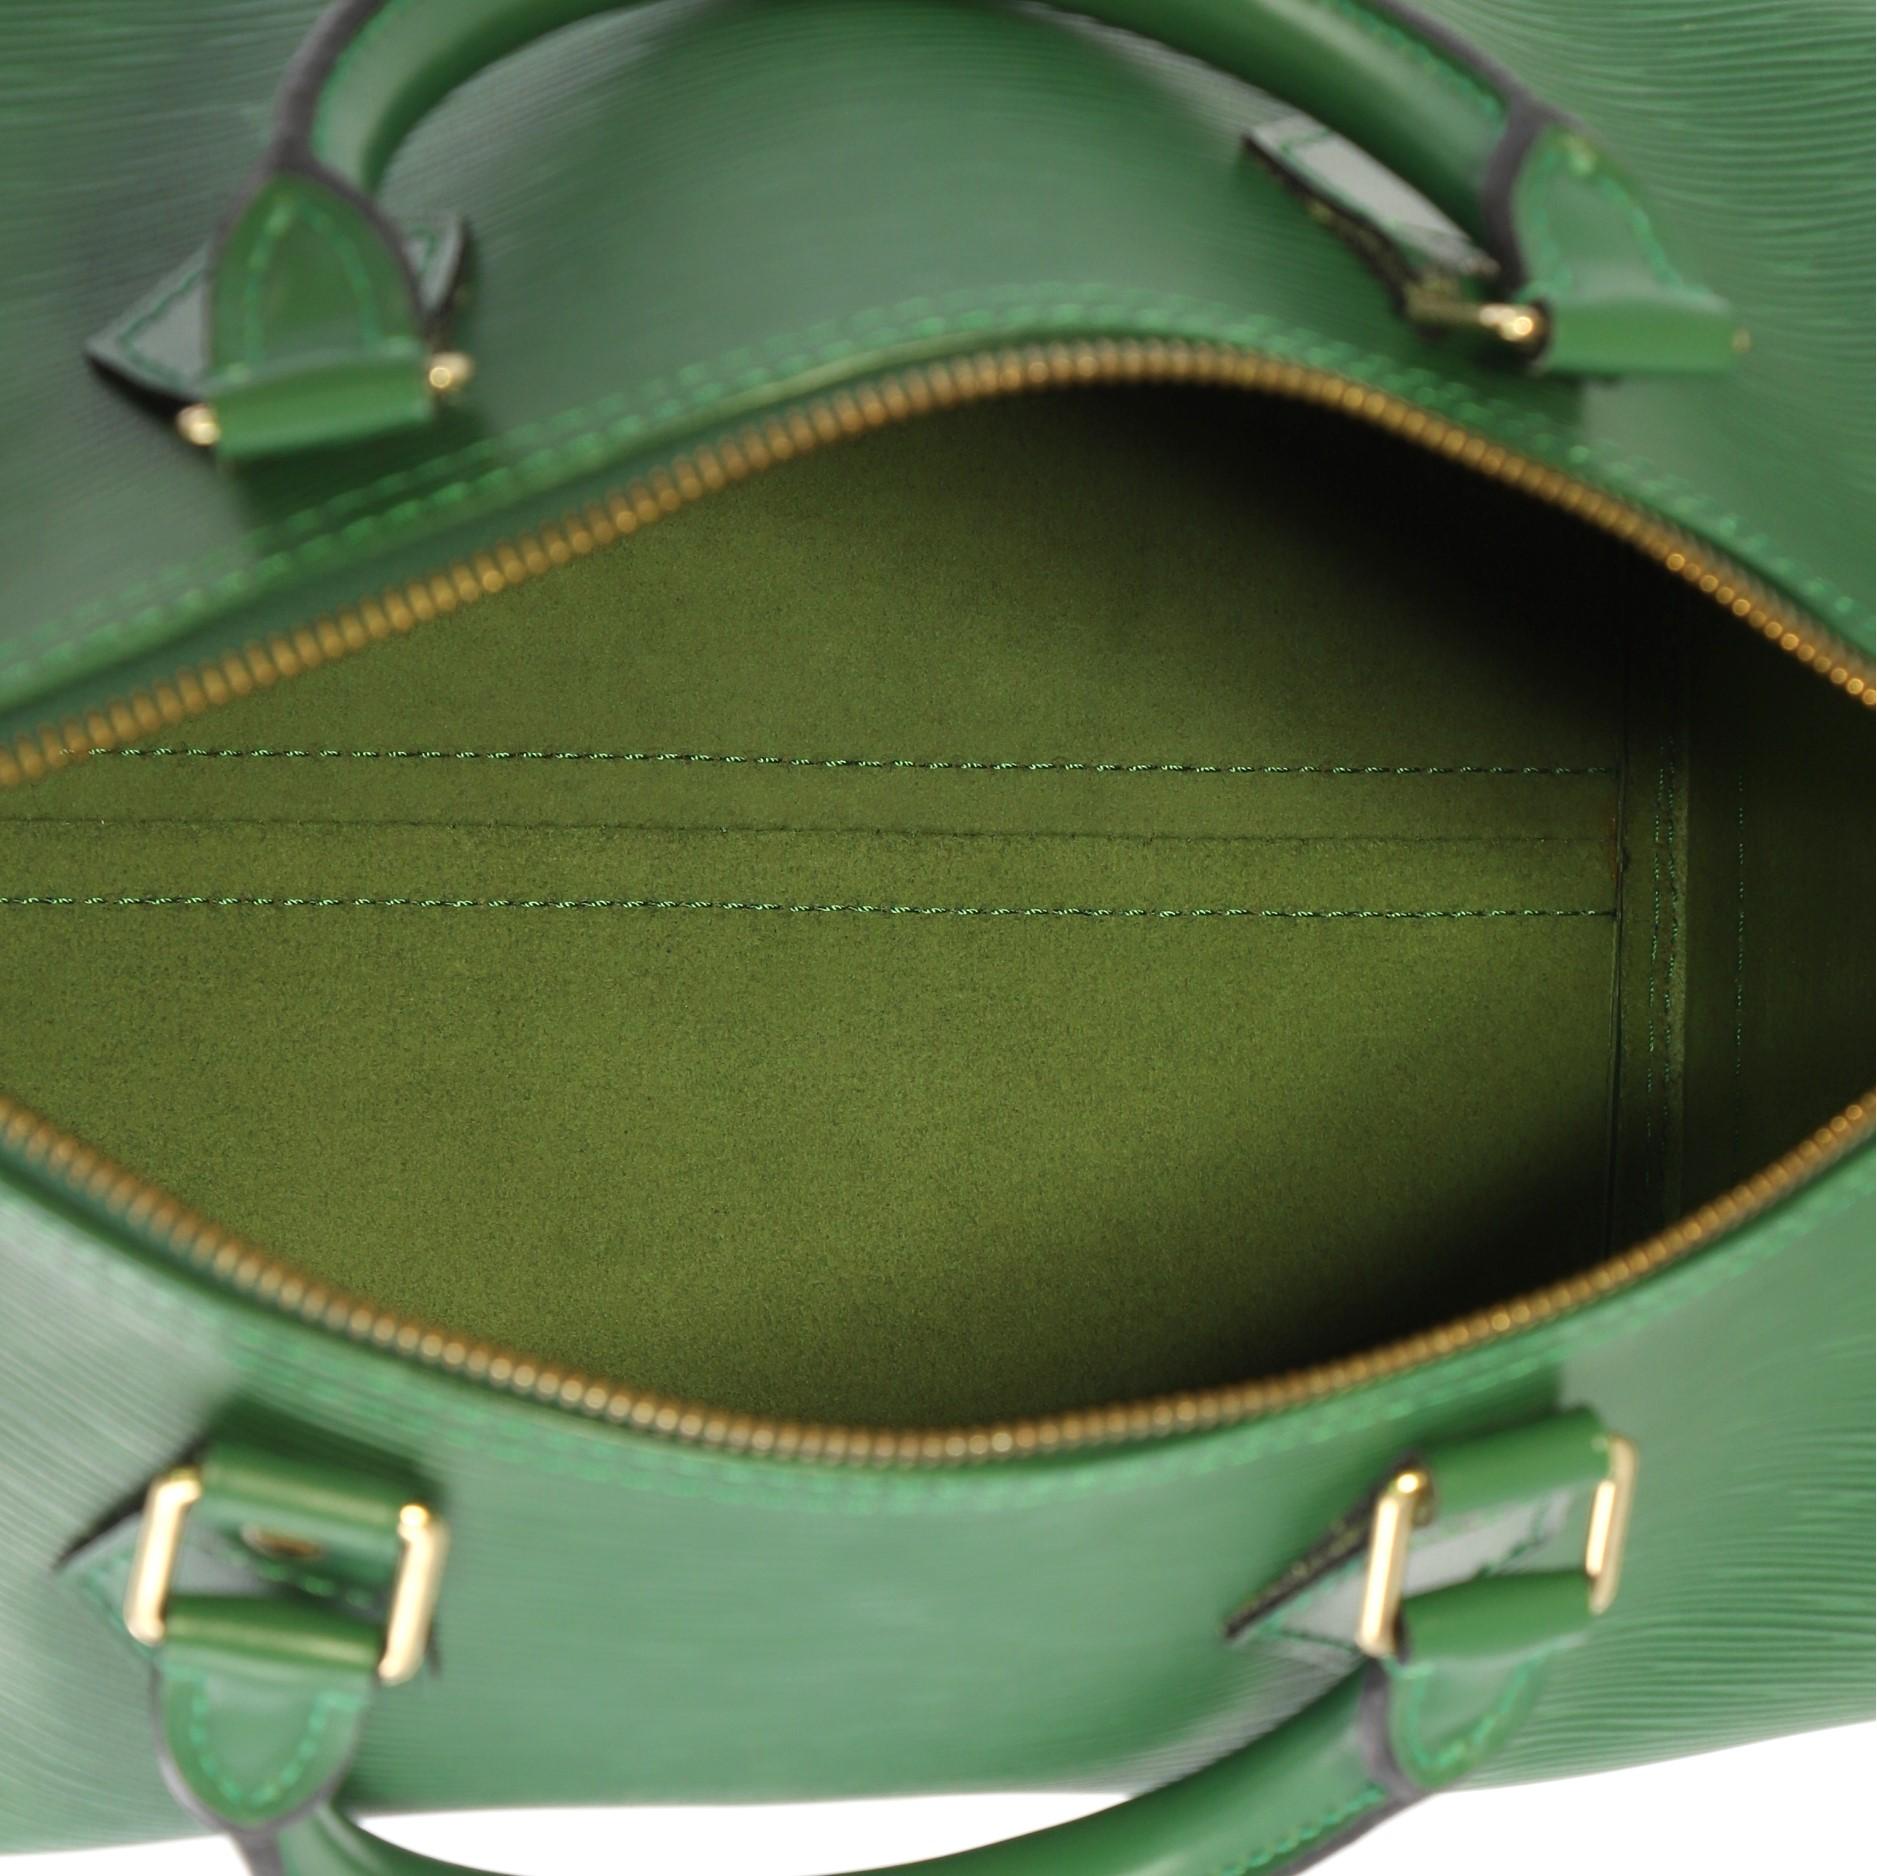 Louis Vuitton Speedy Handbag Epi Leather 30 4